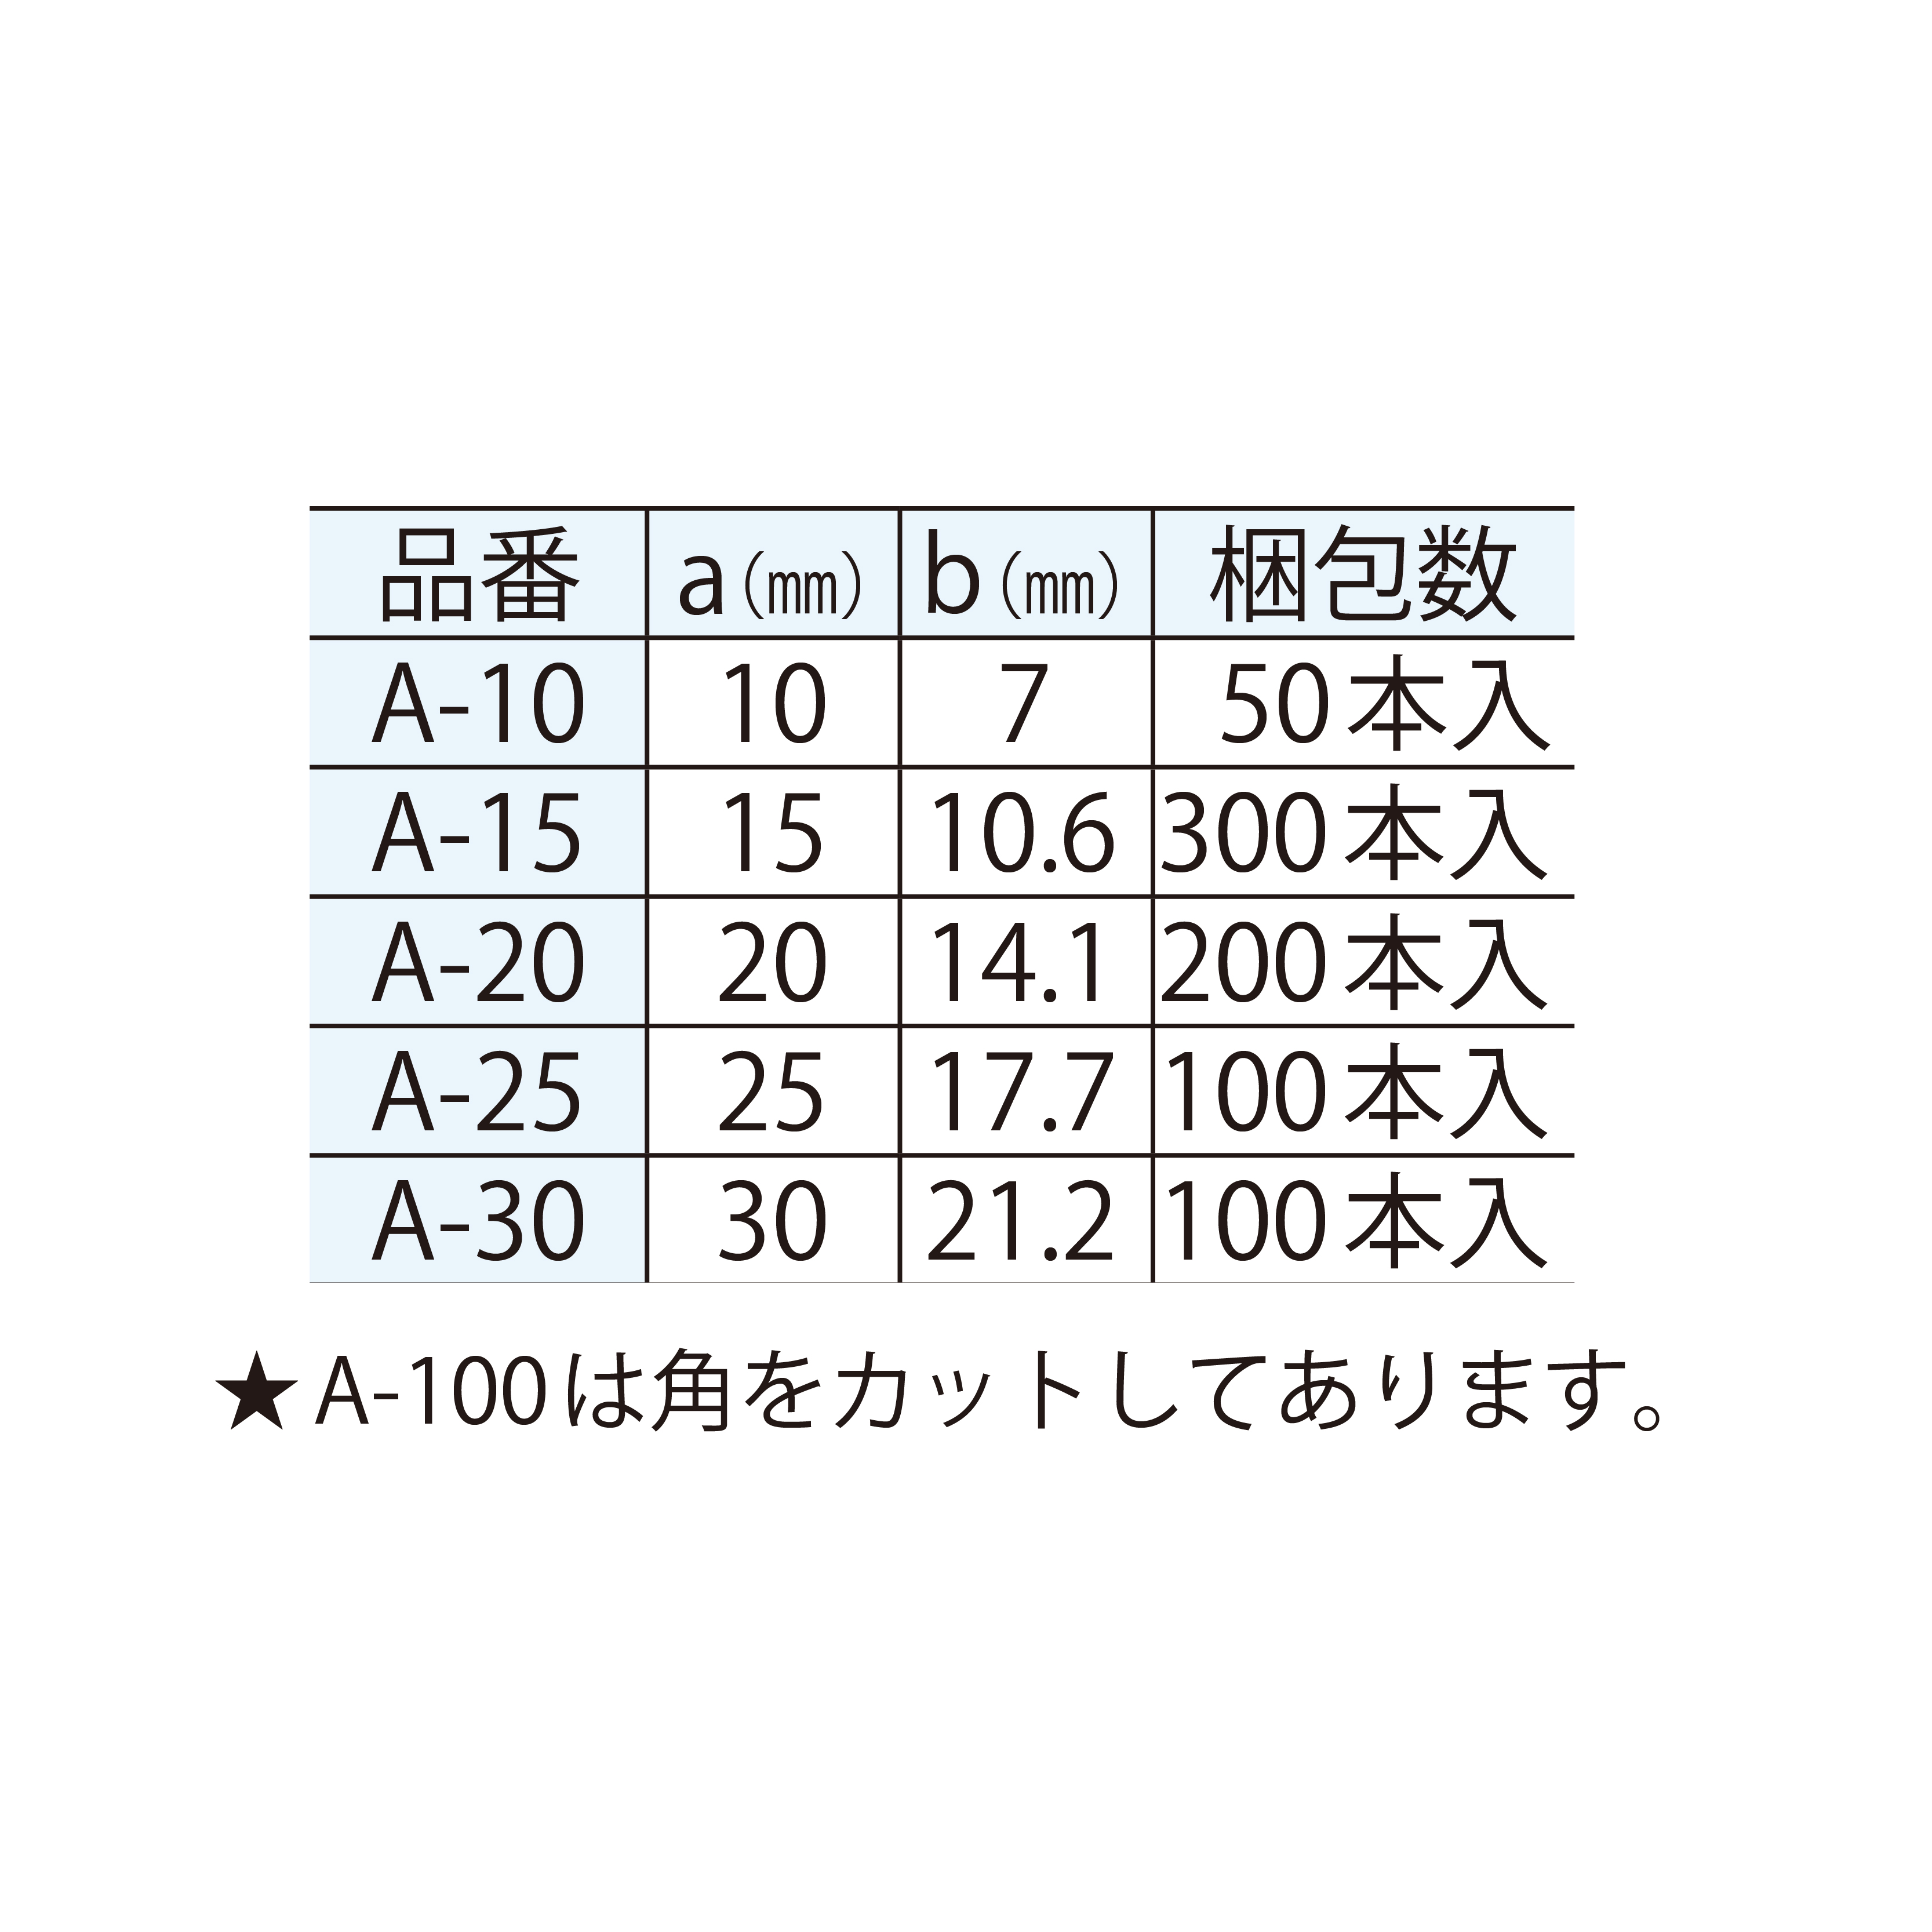 発泡面木 三角型 A-15 15×10.6(mm) 面取り 【ケース販売】300本入 東洋産業